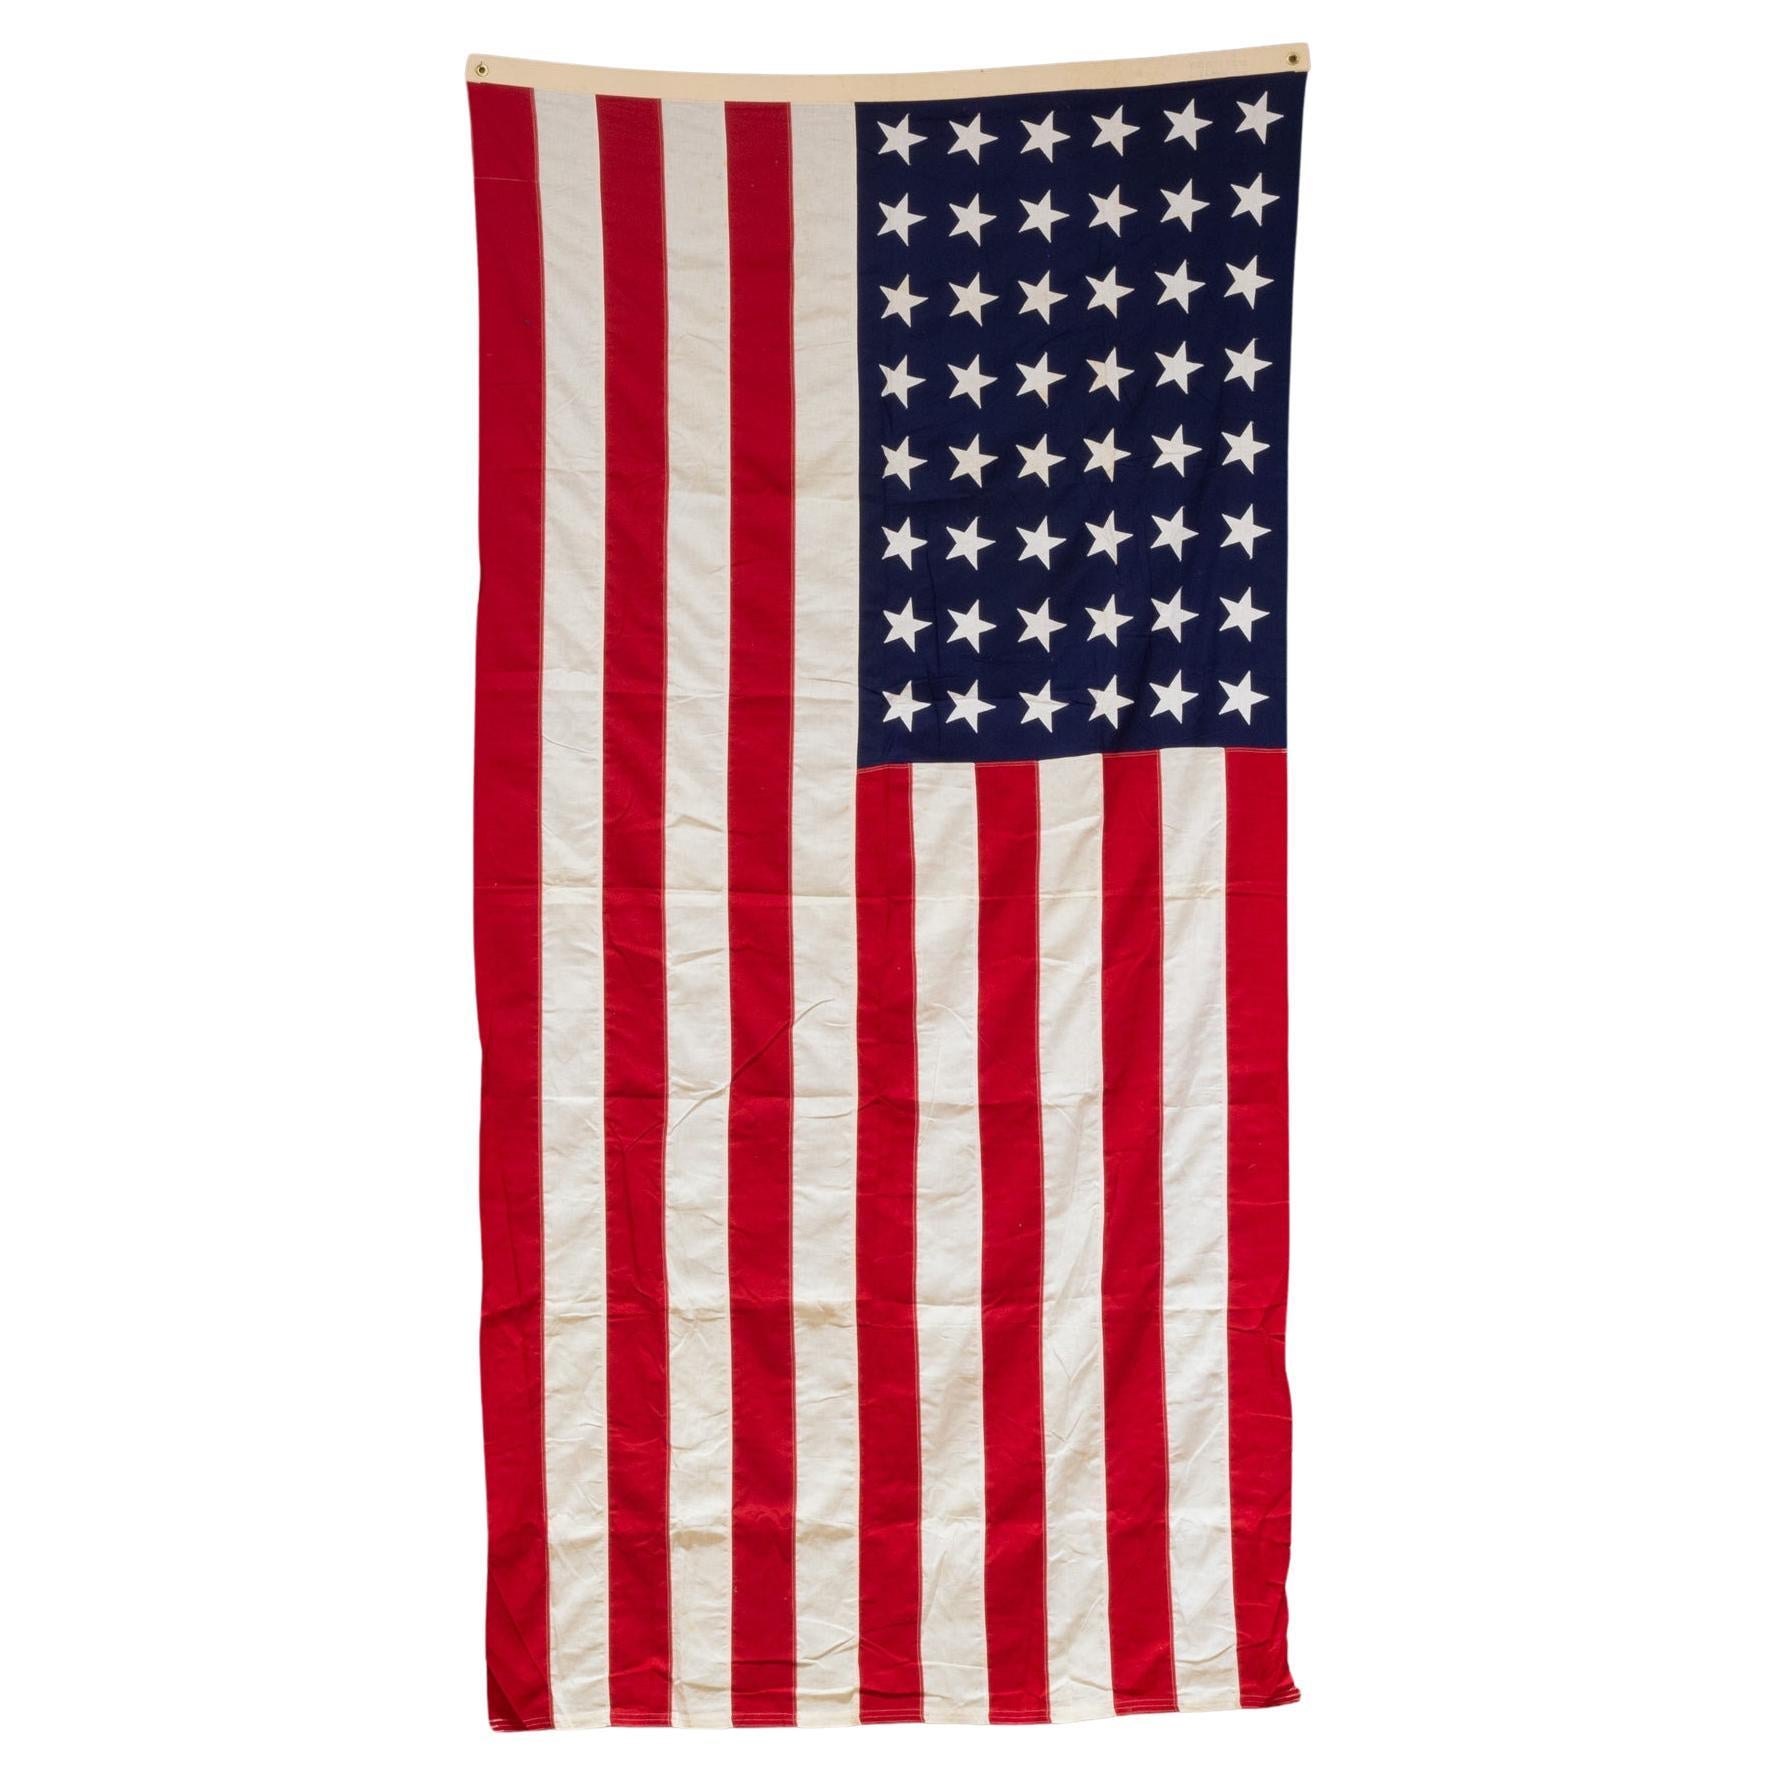 Grand drapeau américain Valley Forge avec 48 étoiles, vers 1940-1950, expédition gratuite